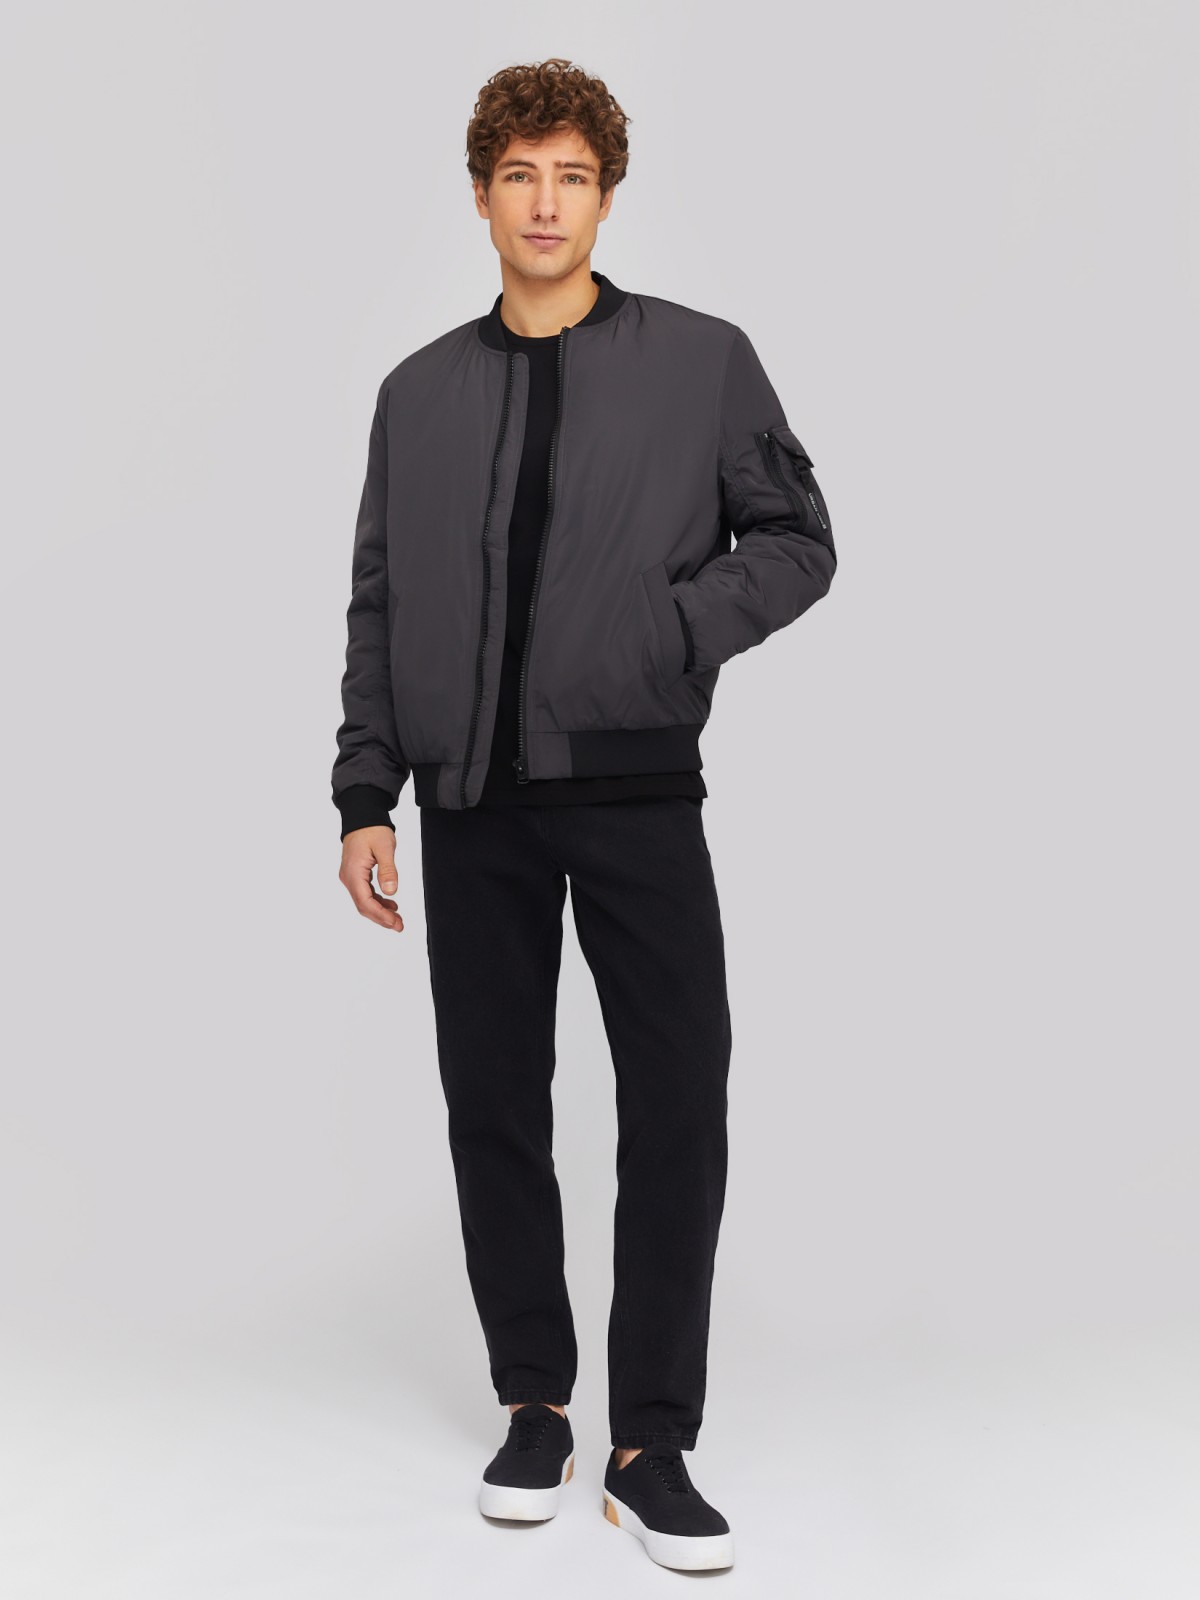 Утеплённая куртка-бомбер с воротником-стойкой zolla 014135102014, цвет серый, размер M - фото 2